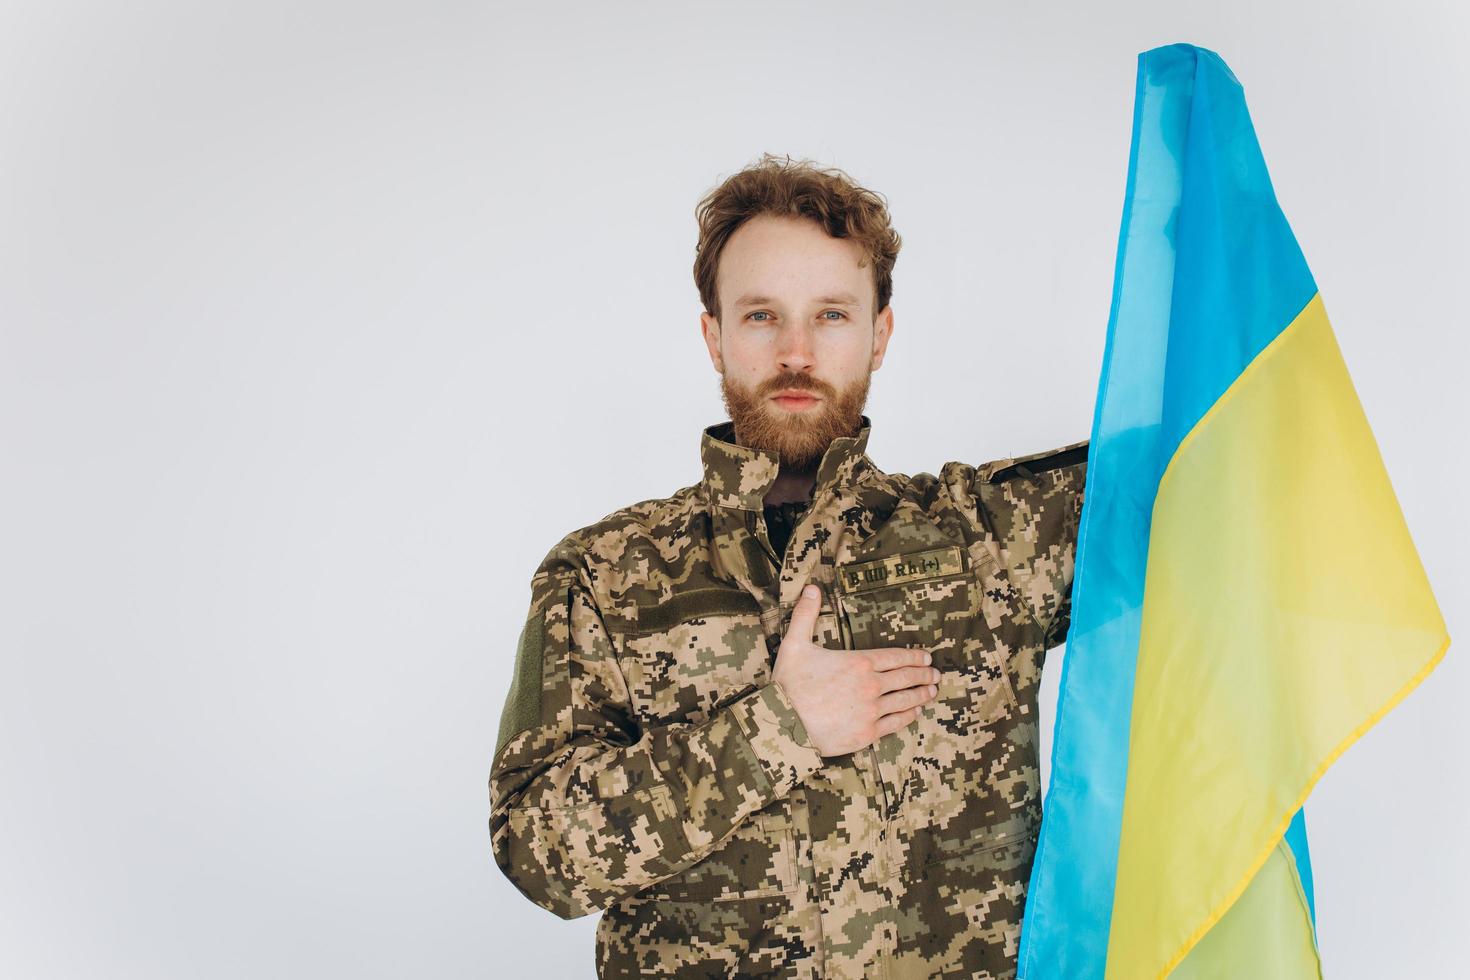 ukrainsk patriotsoldat i militäruniform håller en hand på ett hjärta med en gul och blå flagga på en vit bakgrund foto